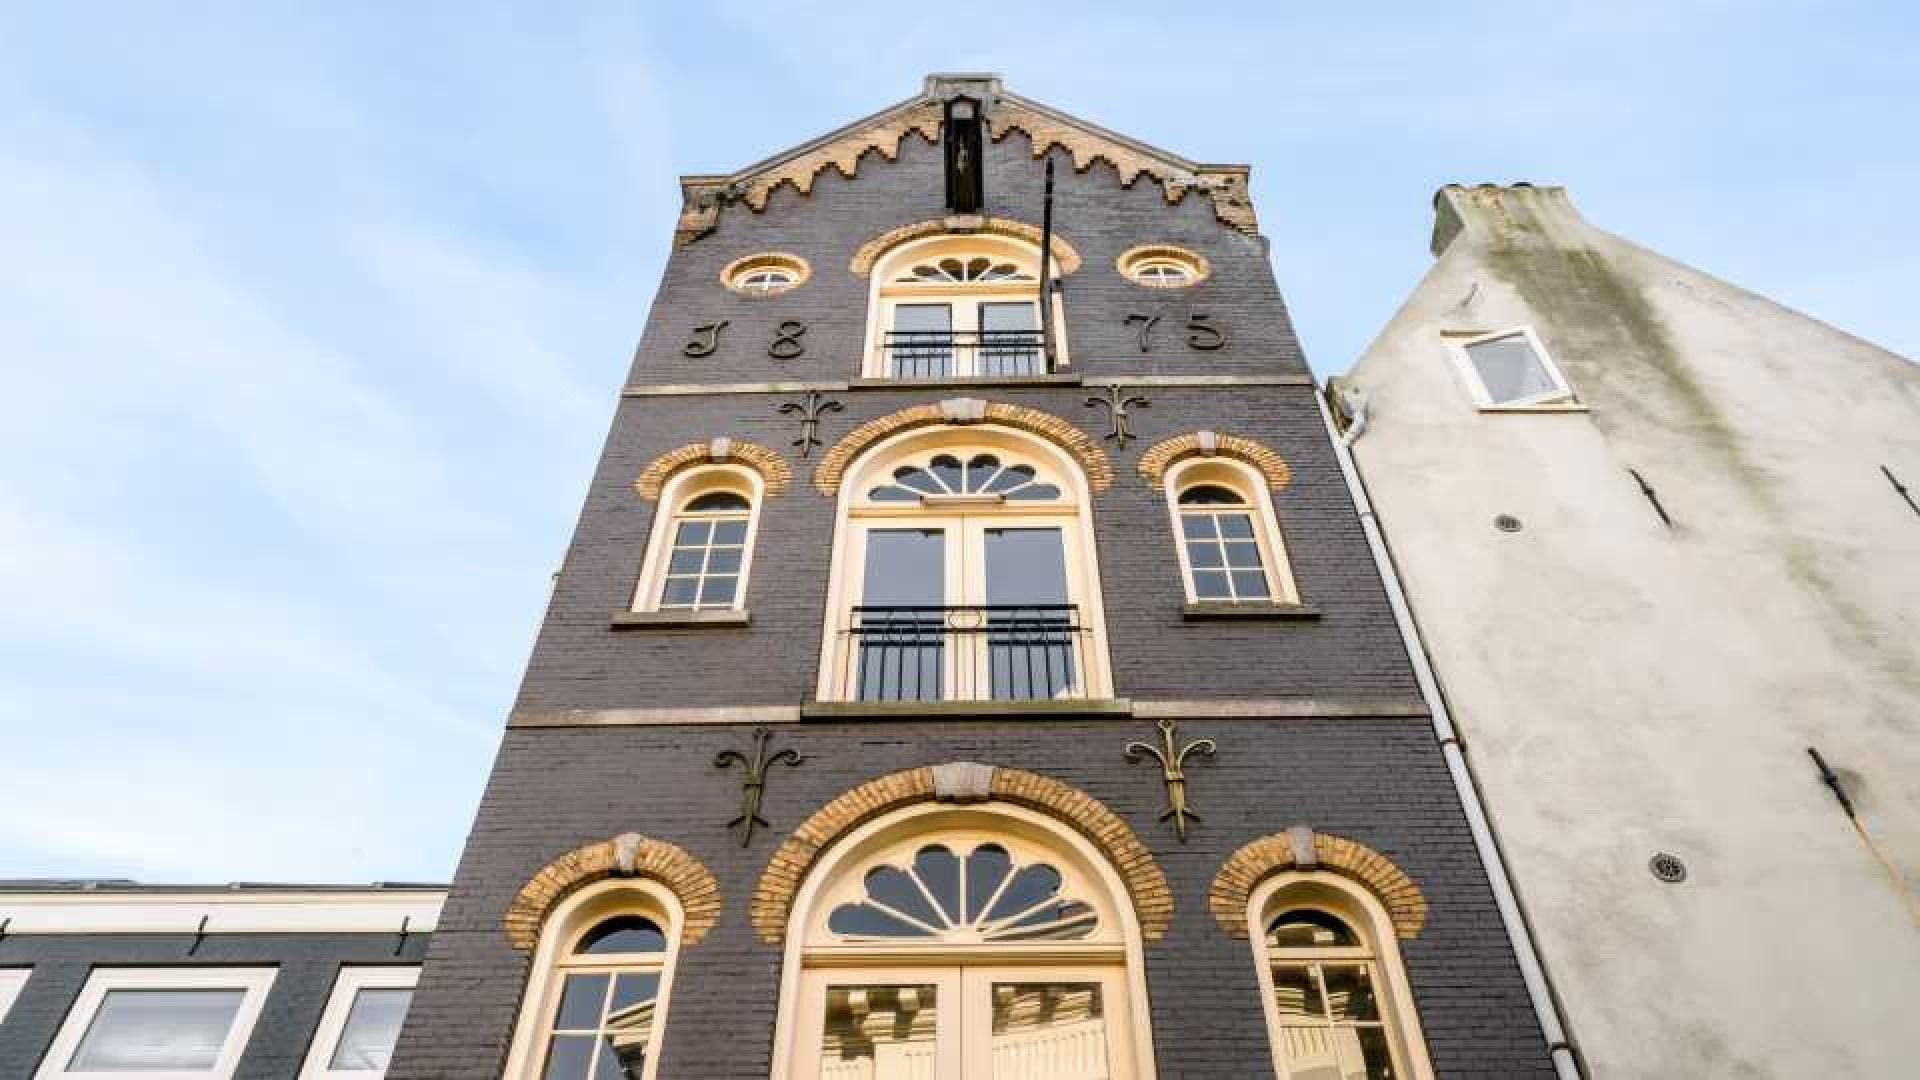 Deze te koop staande woning staat in de paleistuin van koning Willem Alexander en koningin Maxima. Zie foto's 2